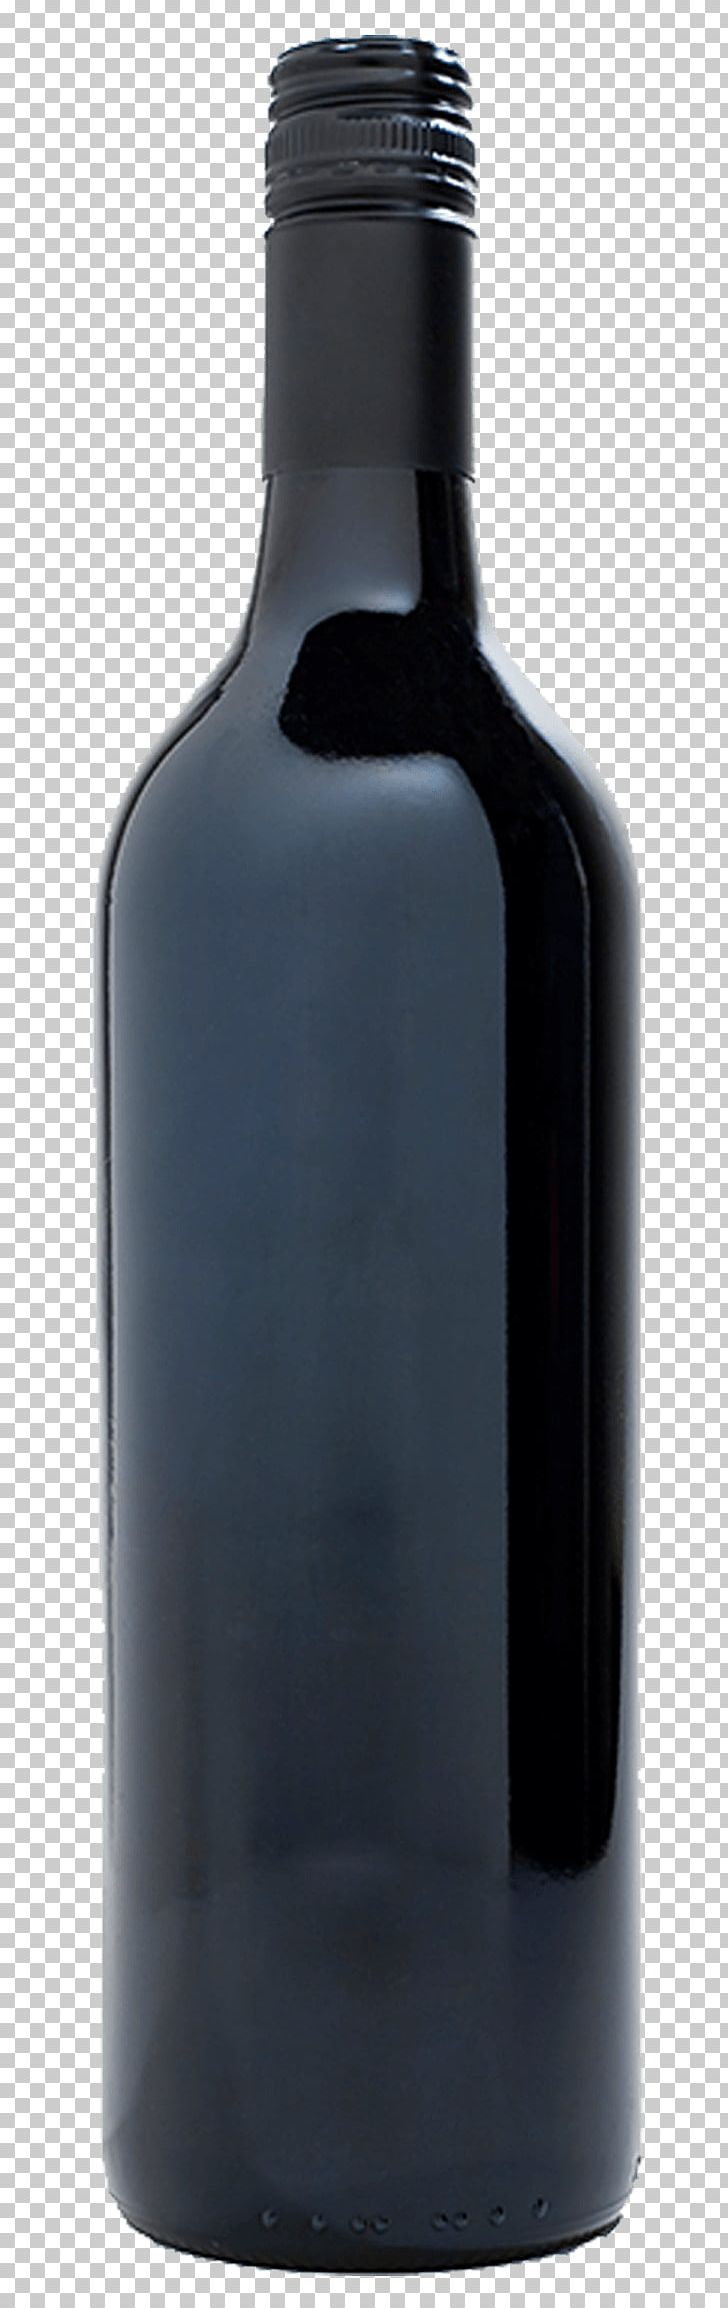 Glass Bottle Liqueur Wine PNG, Clipart, Bottle, Drinkware, Food Drinks, Glass, Glass Bottle Free PNG Download